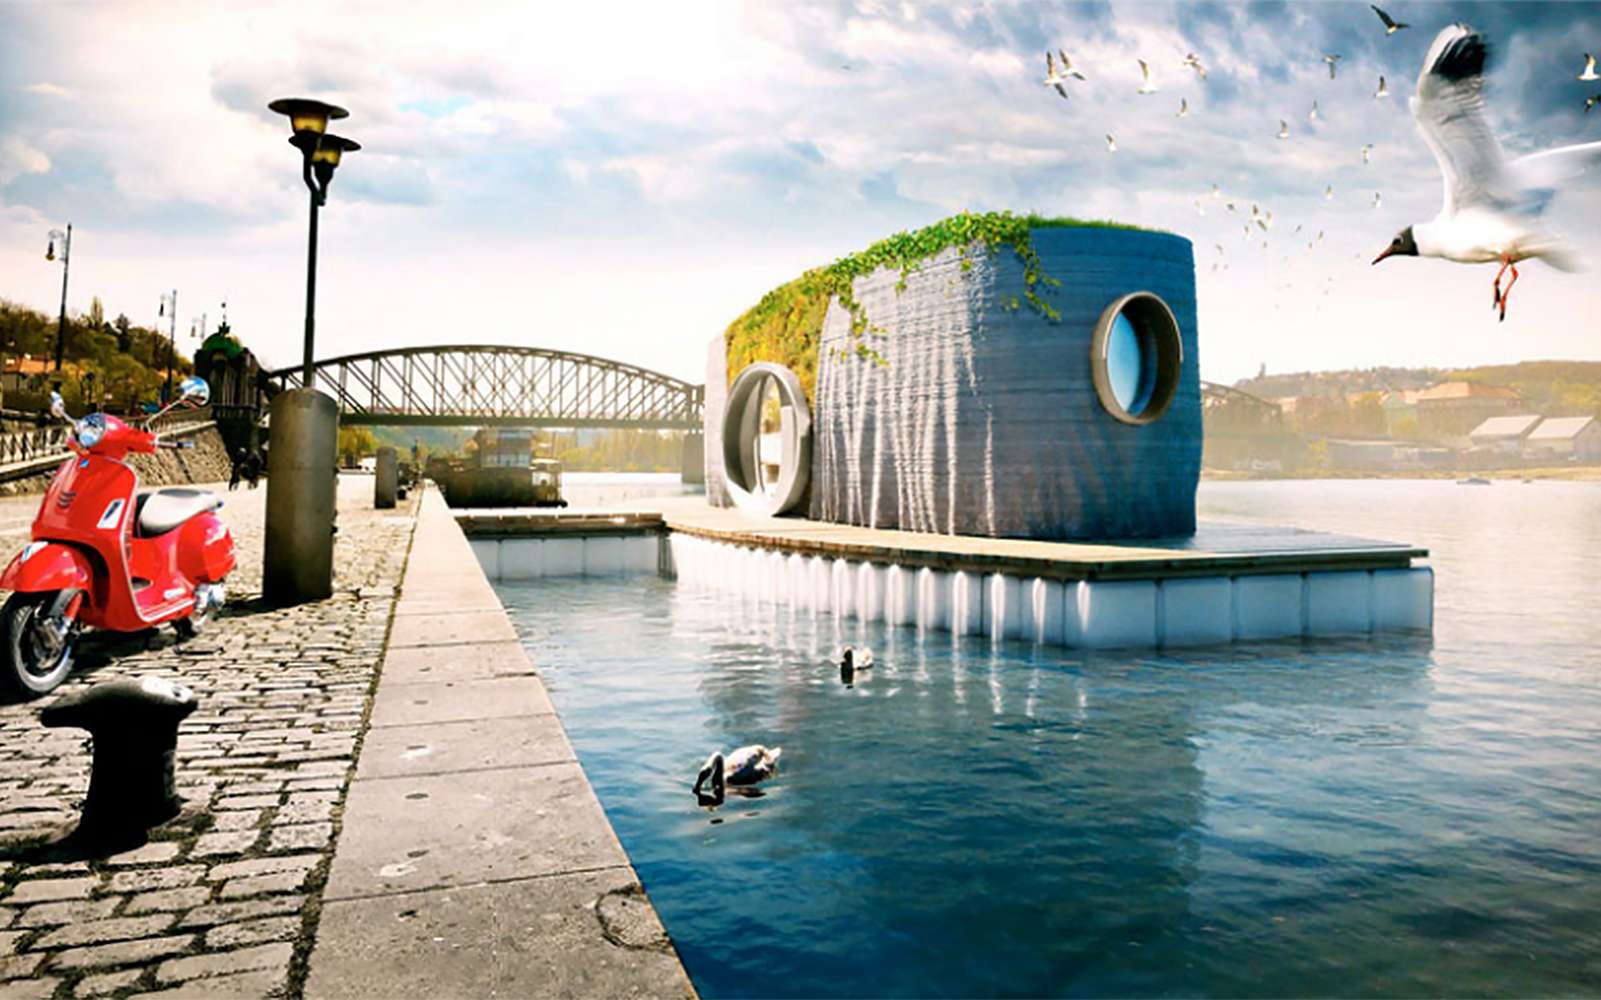 Le prototype de la maison flottante, imprimée en 3D, sera exposée, cet été, à Prague sur la rivière Vltava. © Michal Trpak, studio Scoolpt